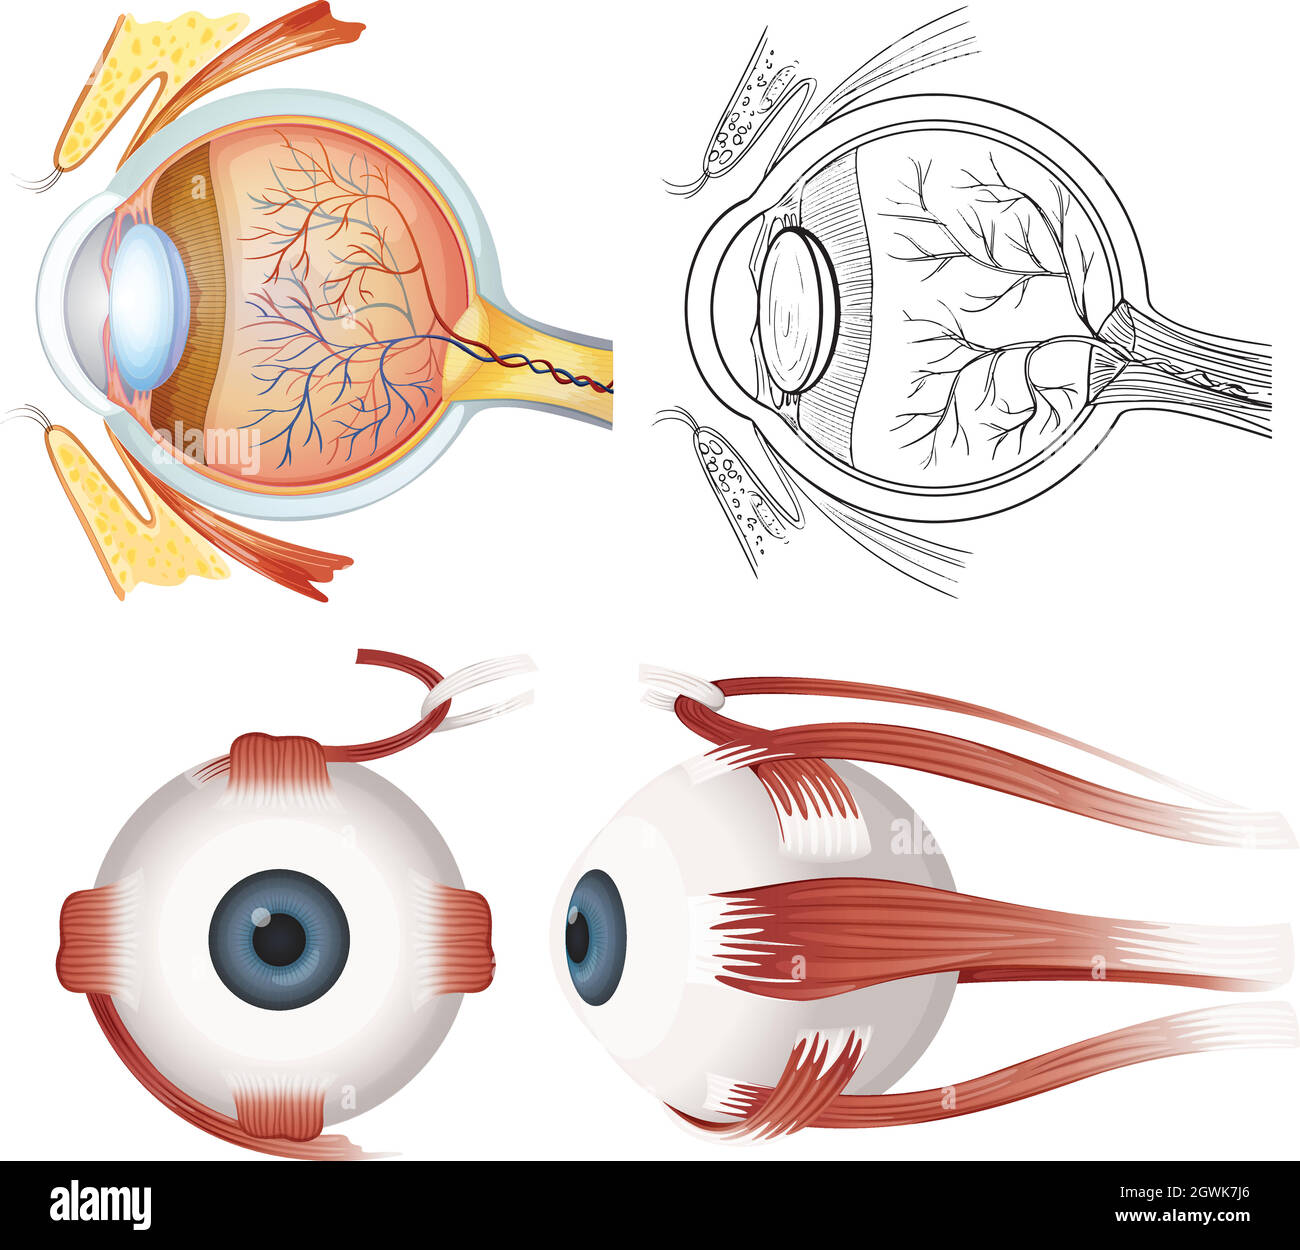 Anatomy of the eye Stock Vector